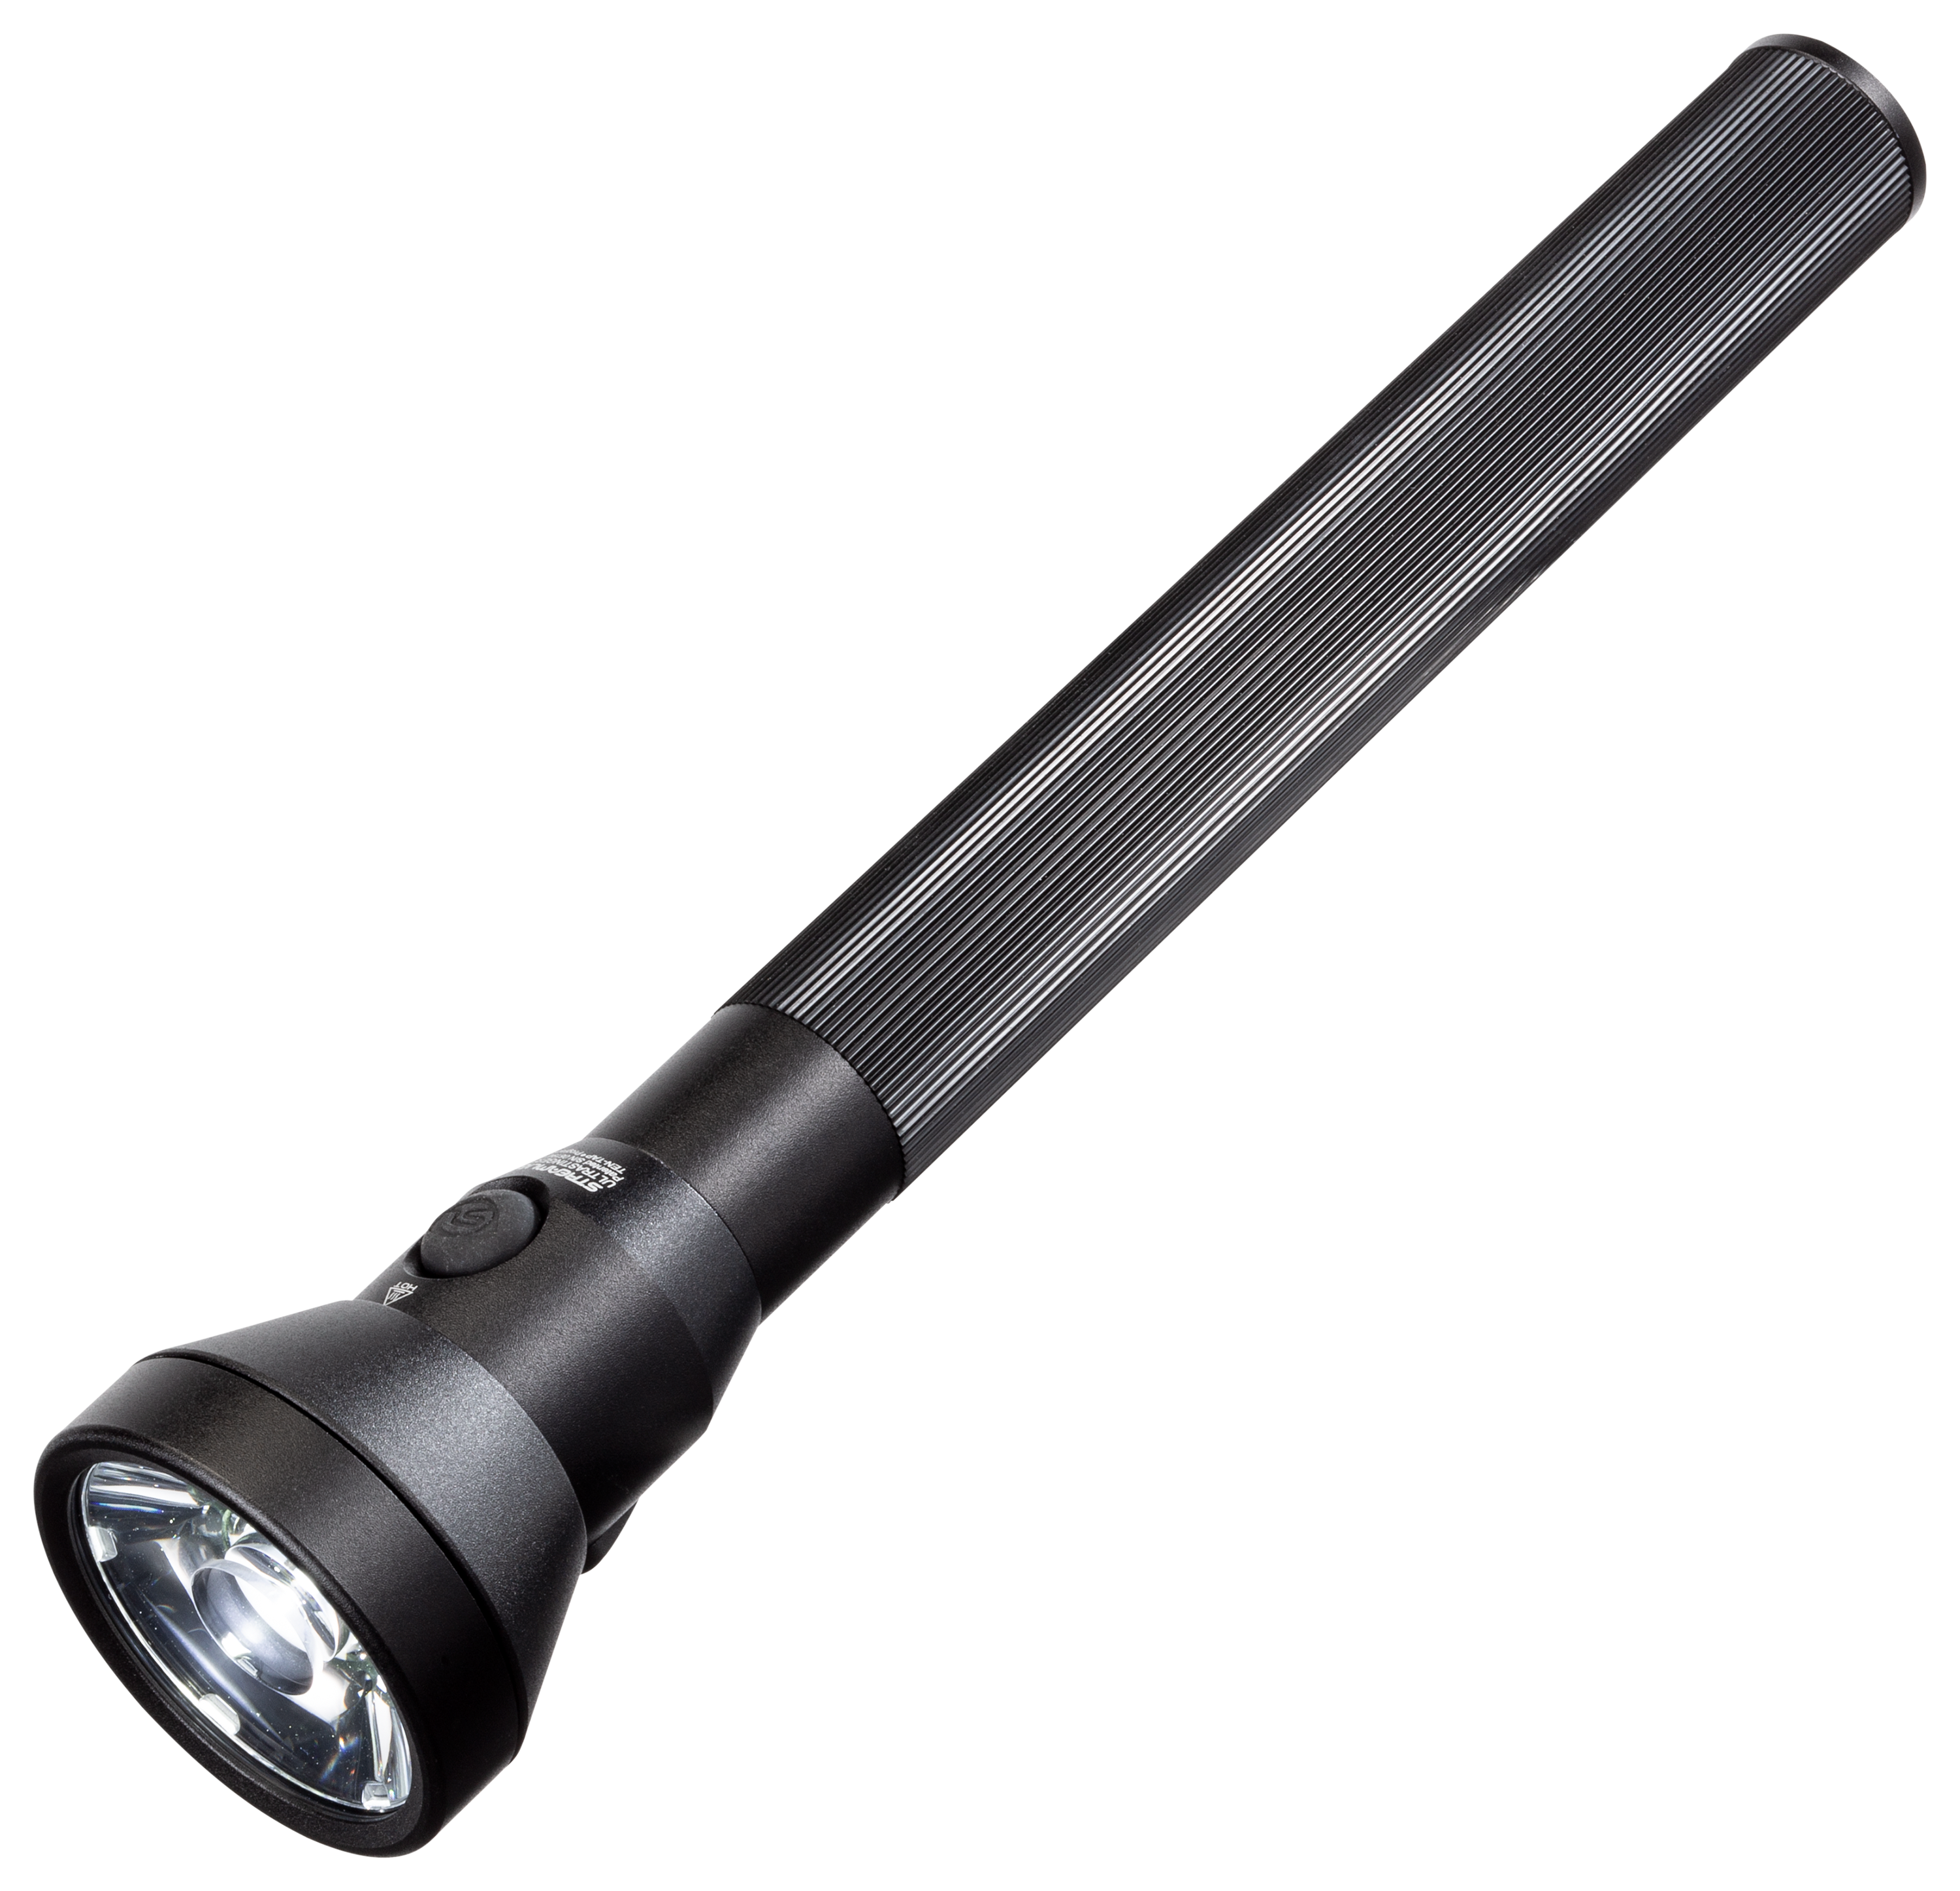 Streamlight UltraStinger AC DC Rechargeable LED Flashlight